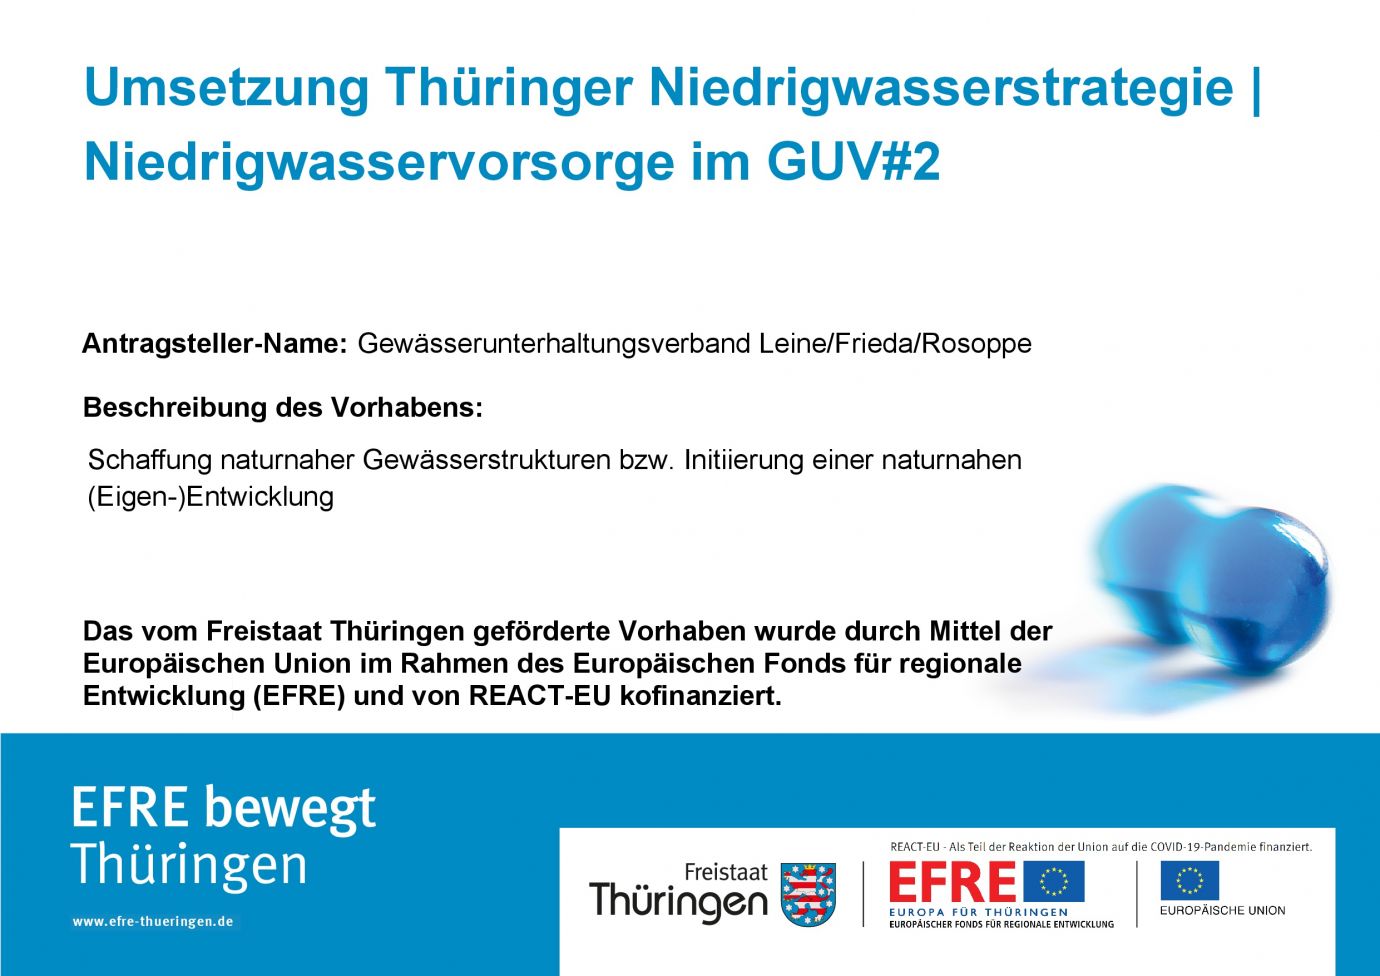 Bildtitel: Umsetzung Thüringer Niedrigwasserstrategie im GUV#2